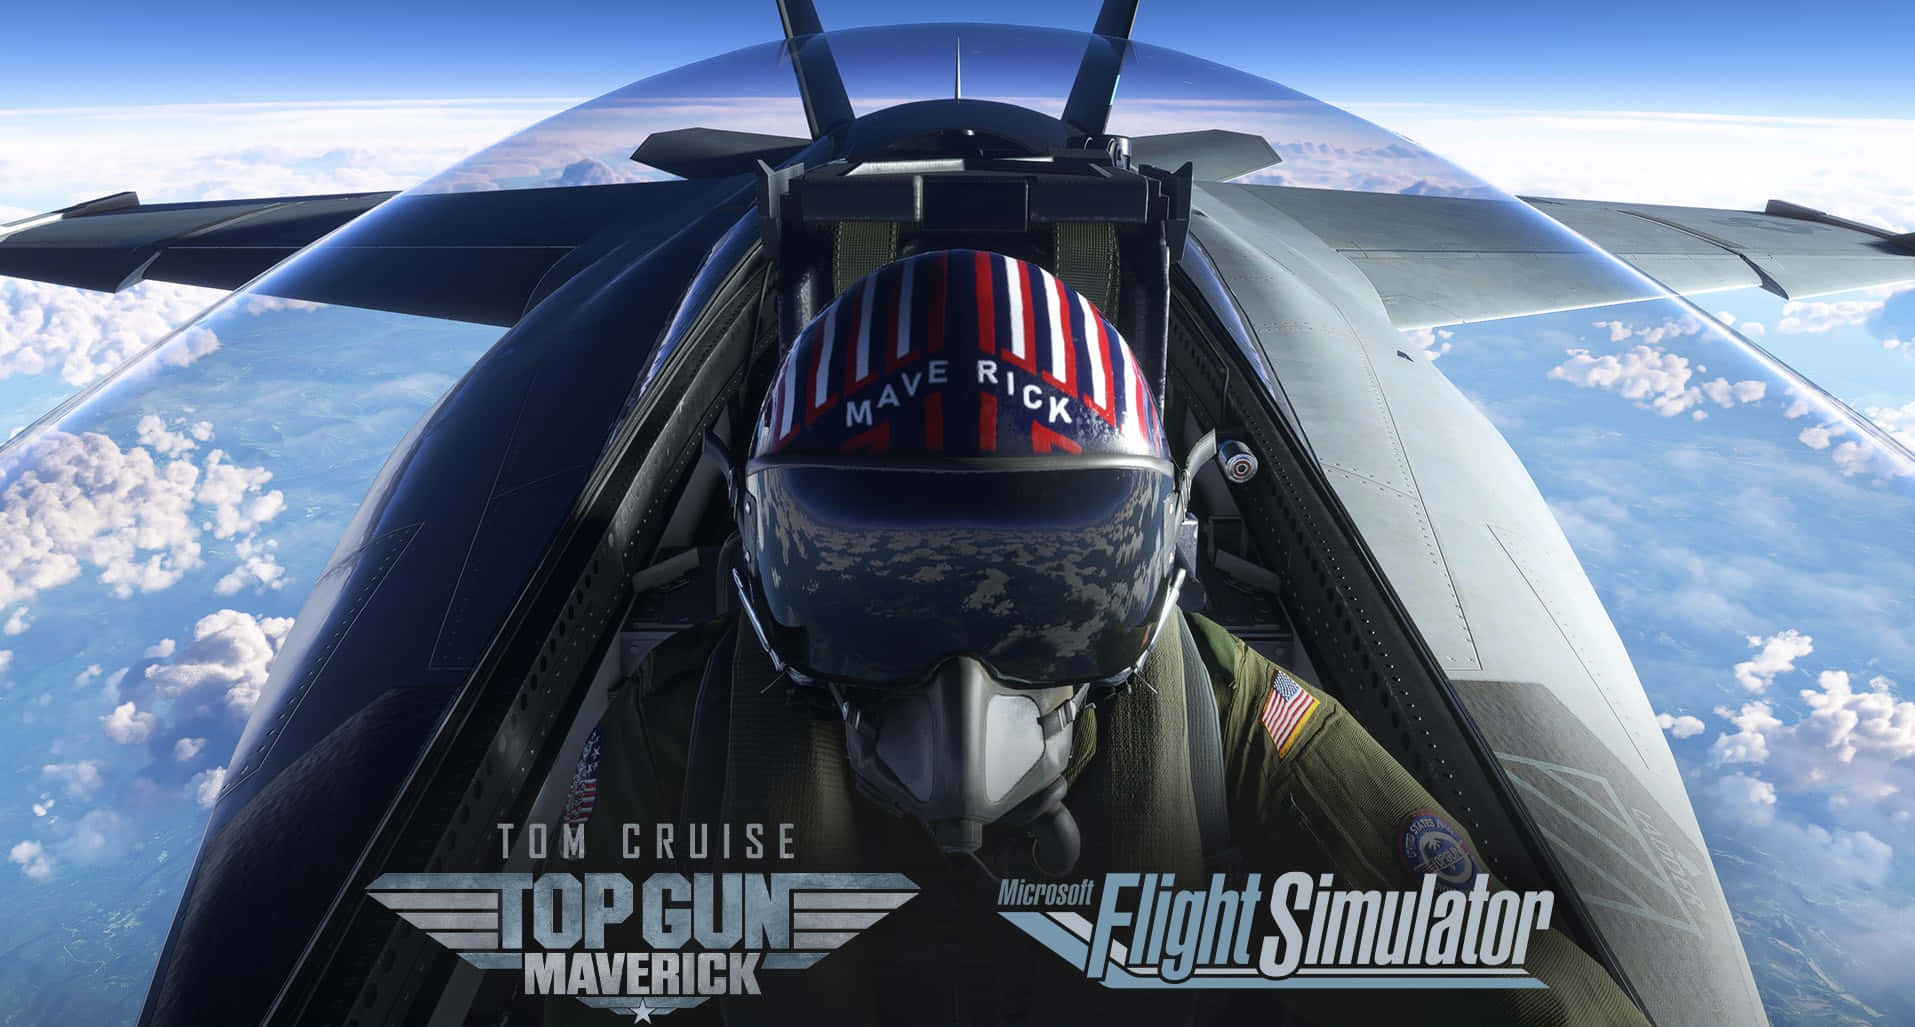 Pilot Top Gun Maverick Flight Simulator Wallpaper